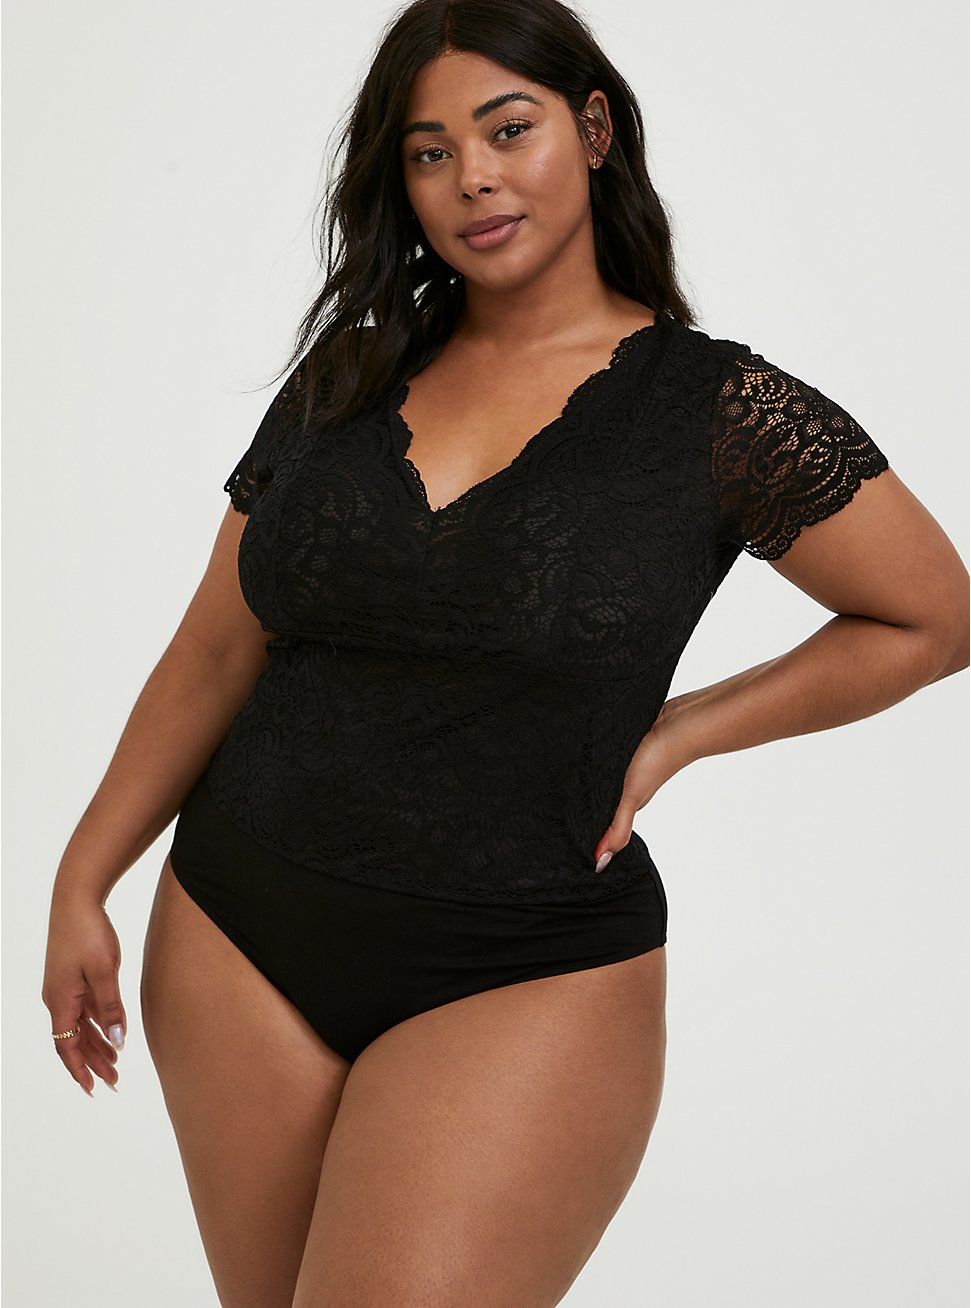 Pieces bodysuit discount 62% Black M WOMEN FASHION Shirts & T-shirts Lace 